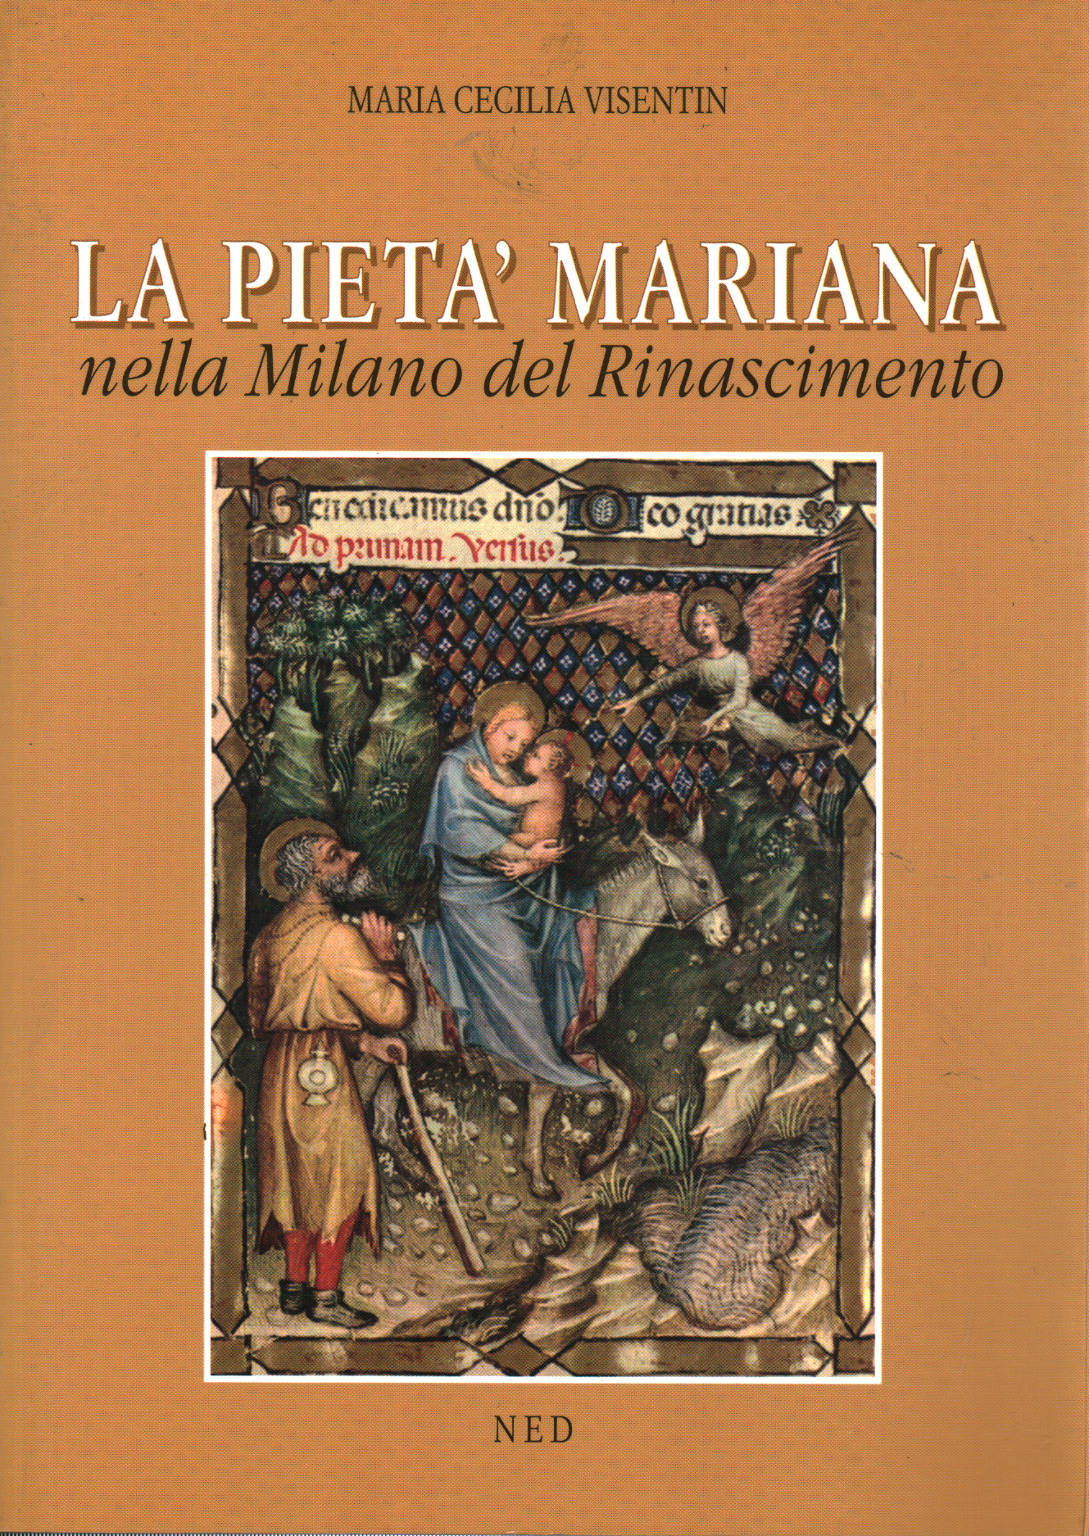 La pietà mariana nella Milano del Rinascimento, Maria Cecilia Visentin